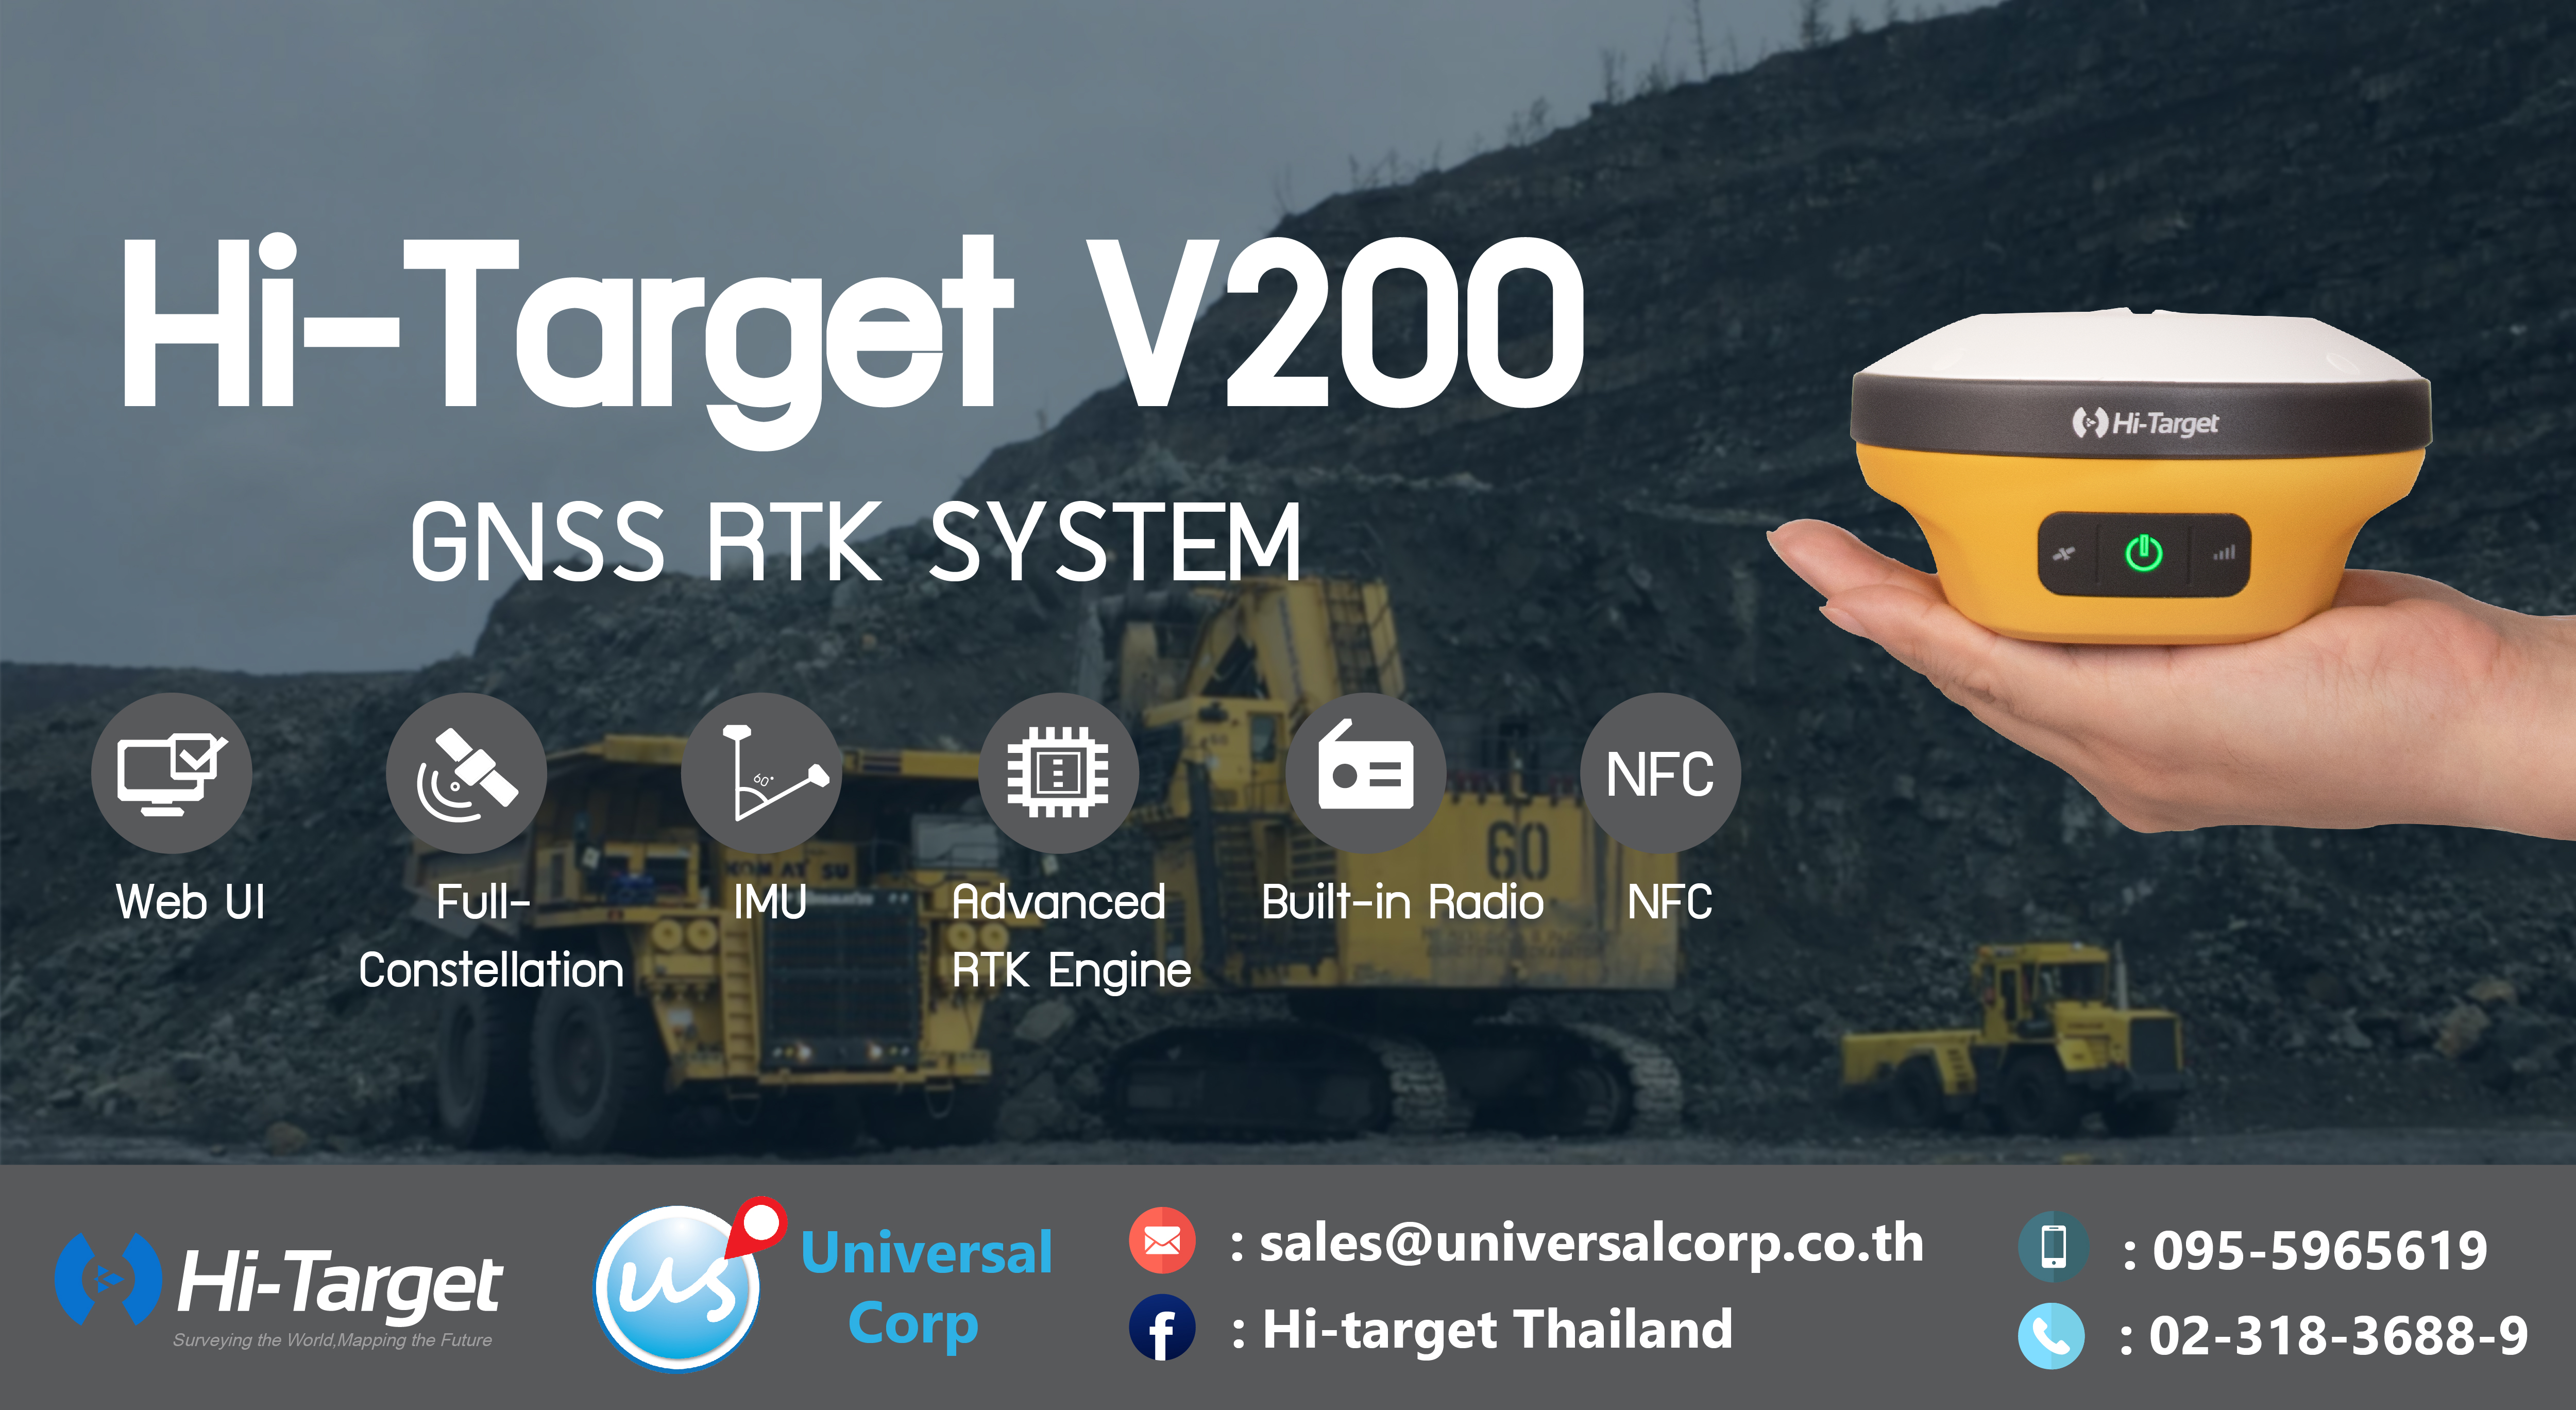 Hi-Target V200 GNSS RTK System